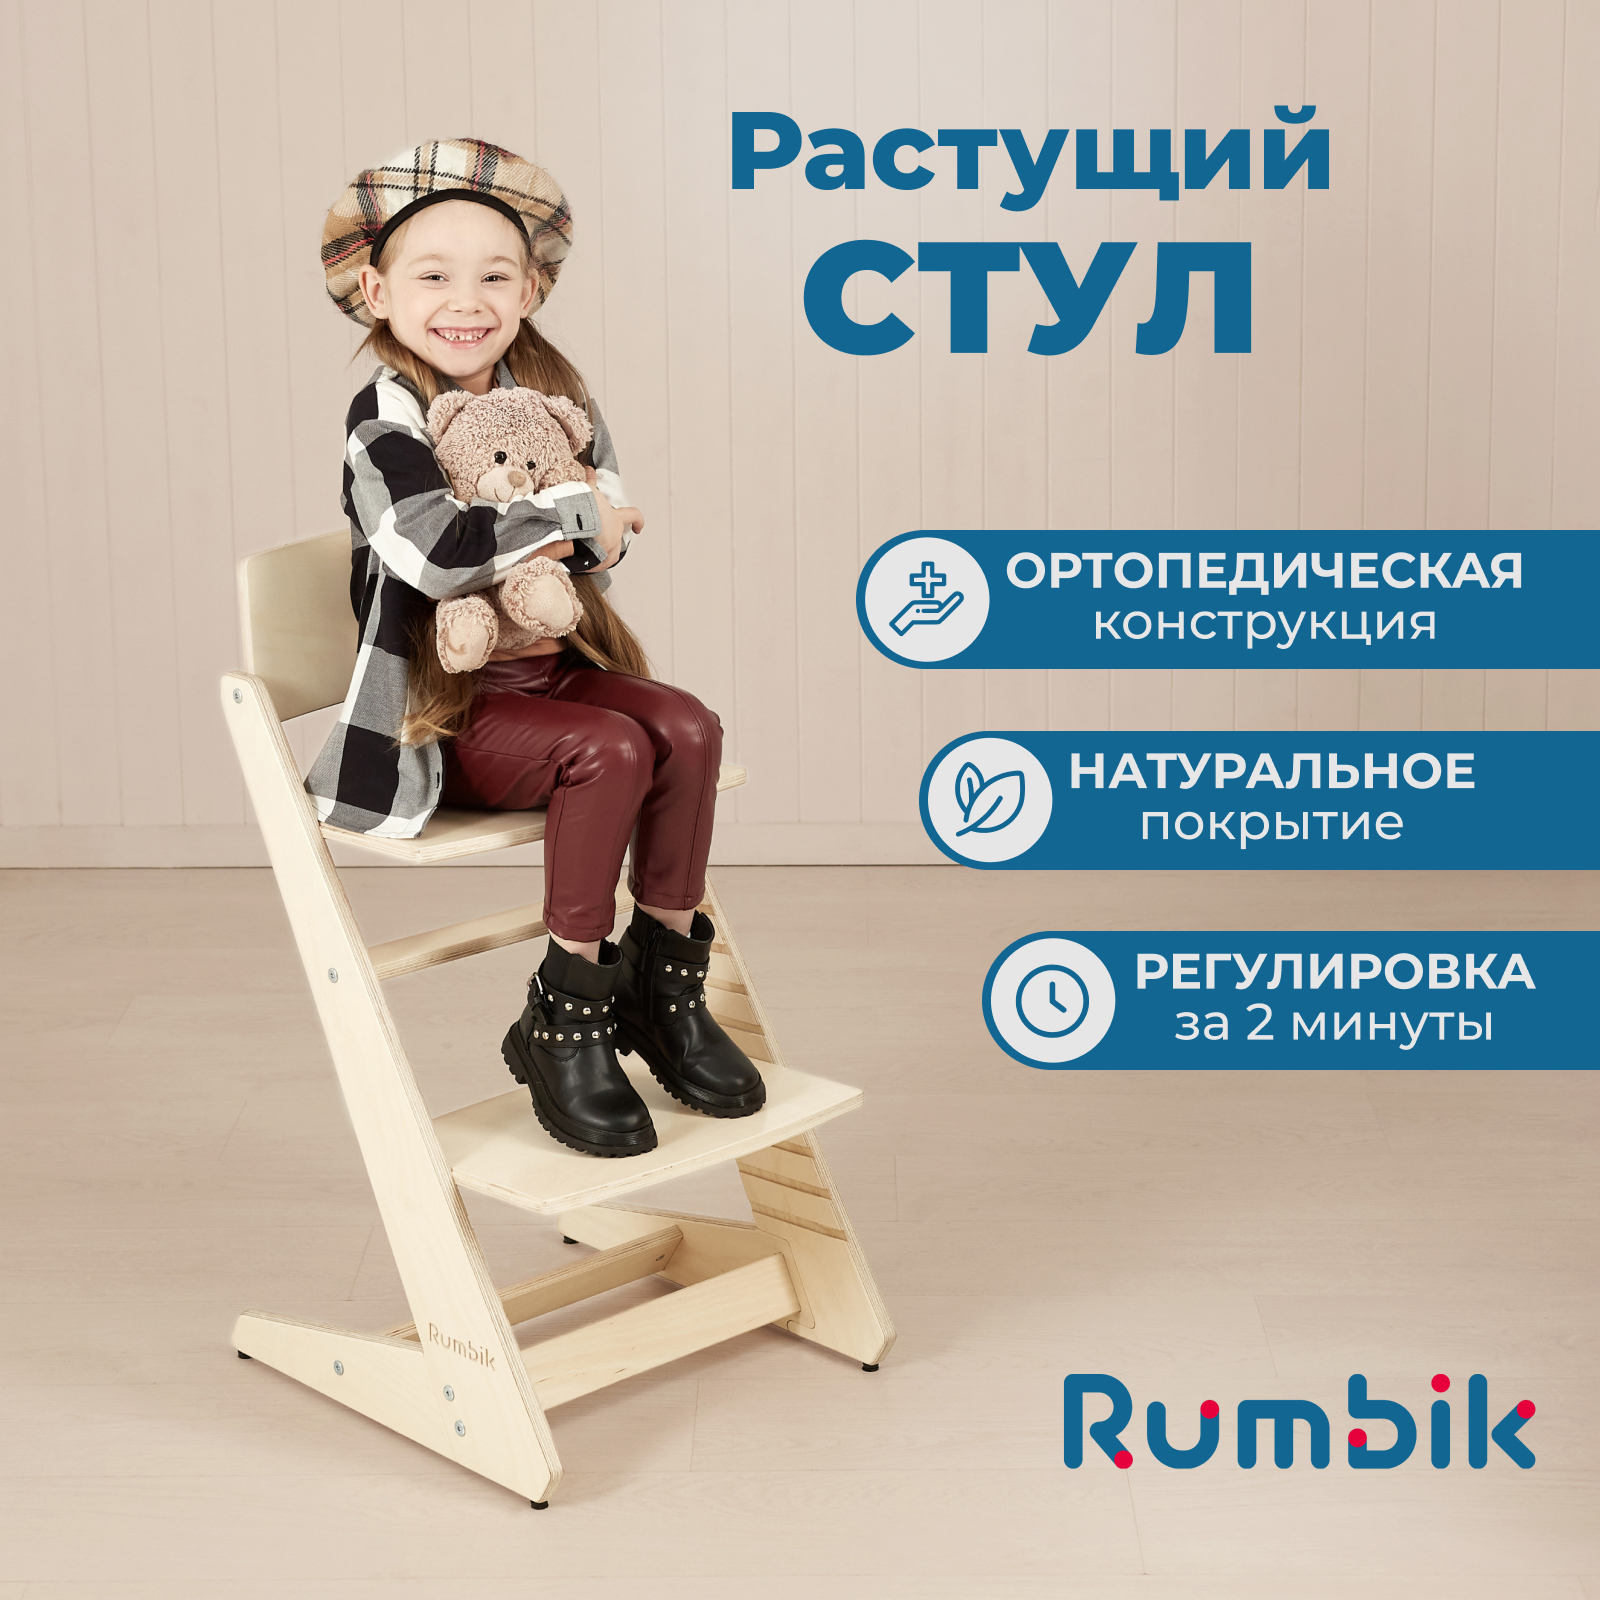 Растущий стул для детей Rumbik Kit береза, регулируемый стульчик для кормления, деревянный стульчик для кормления roba растущий sit up super maxi